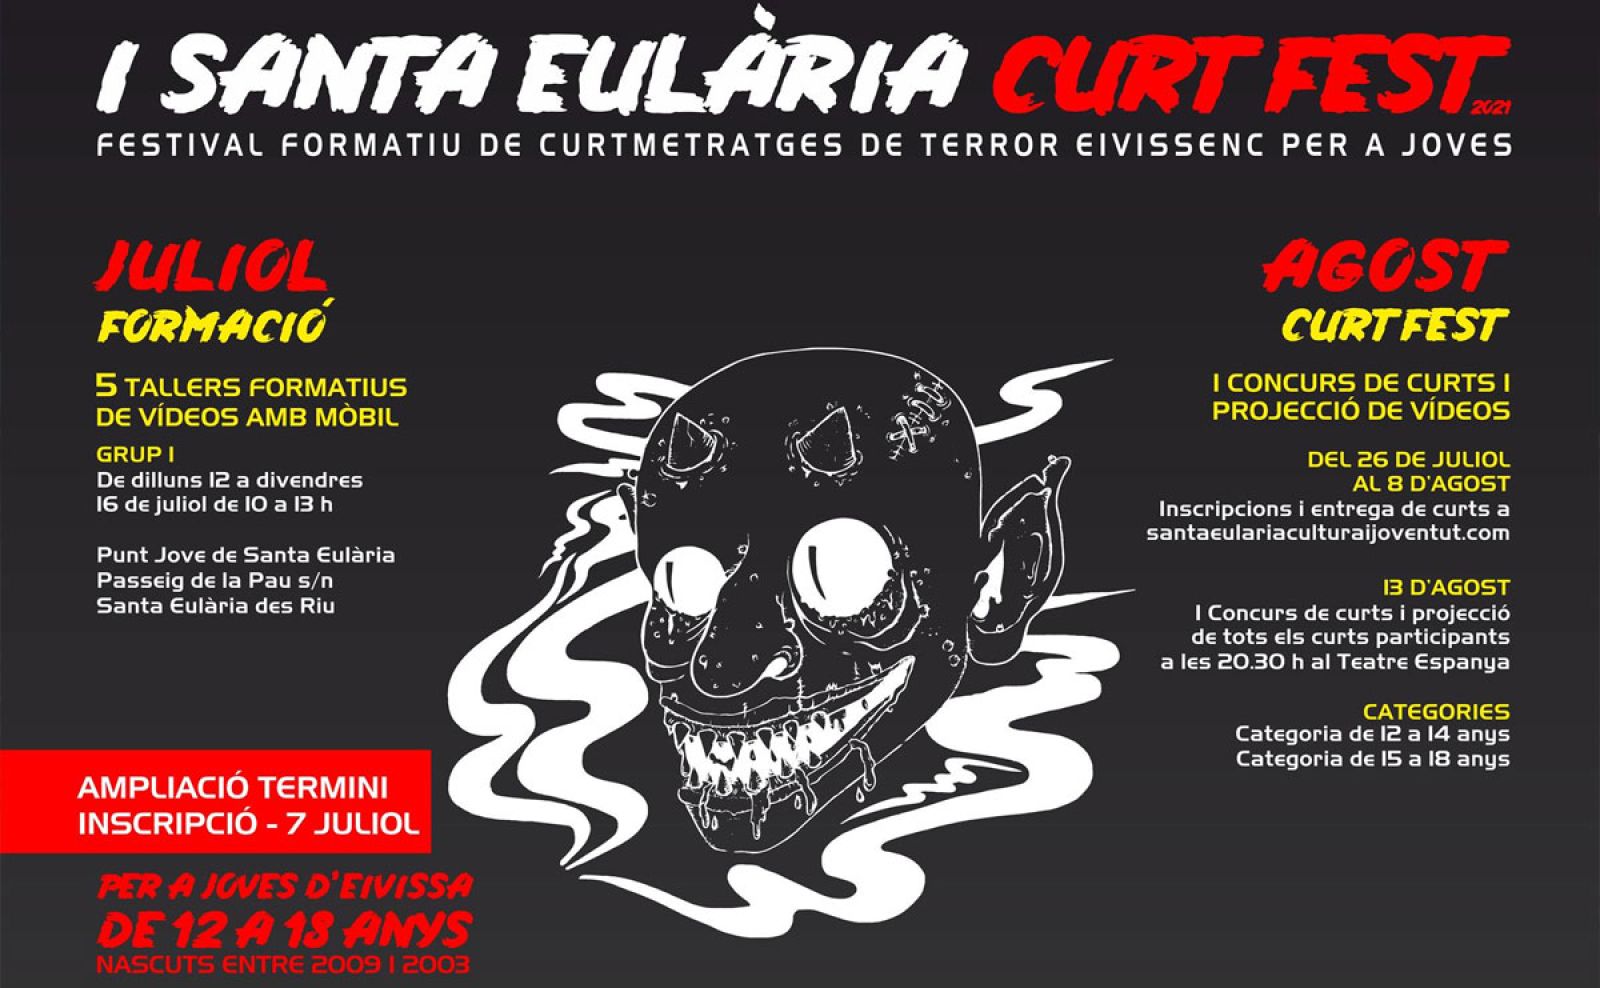 Abierto el plazo de inscripción para el concurso de cortos de terror realizados por jóvenes ‘I Santa Eulària Curt Fest’